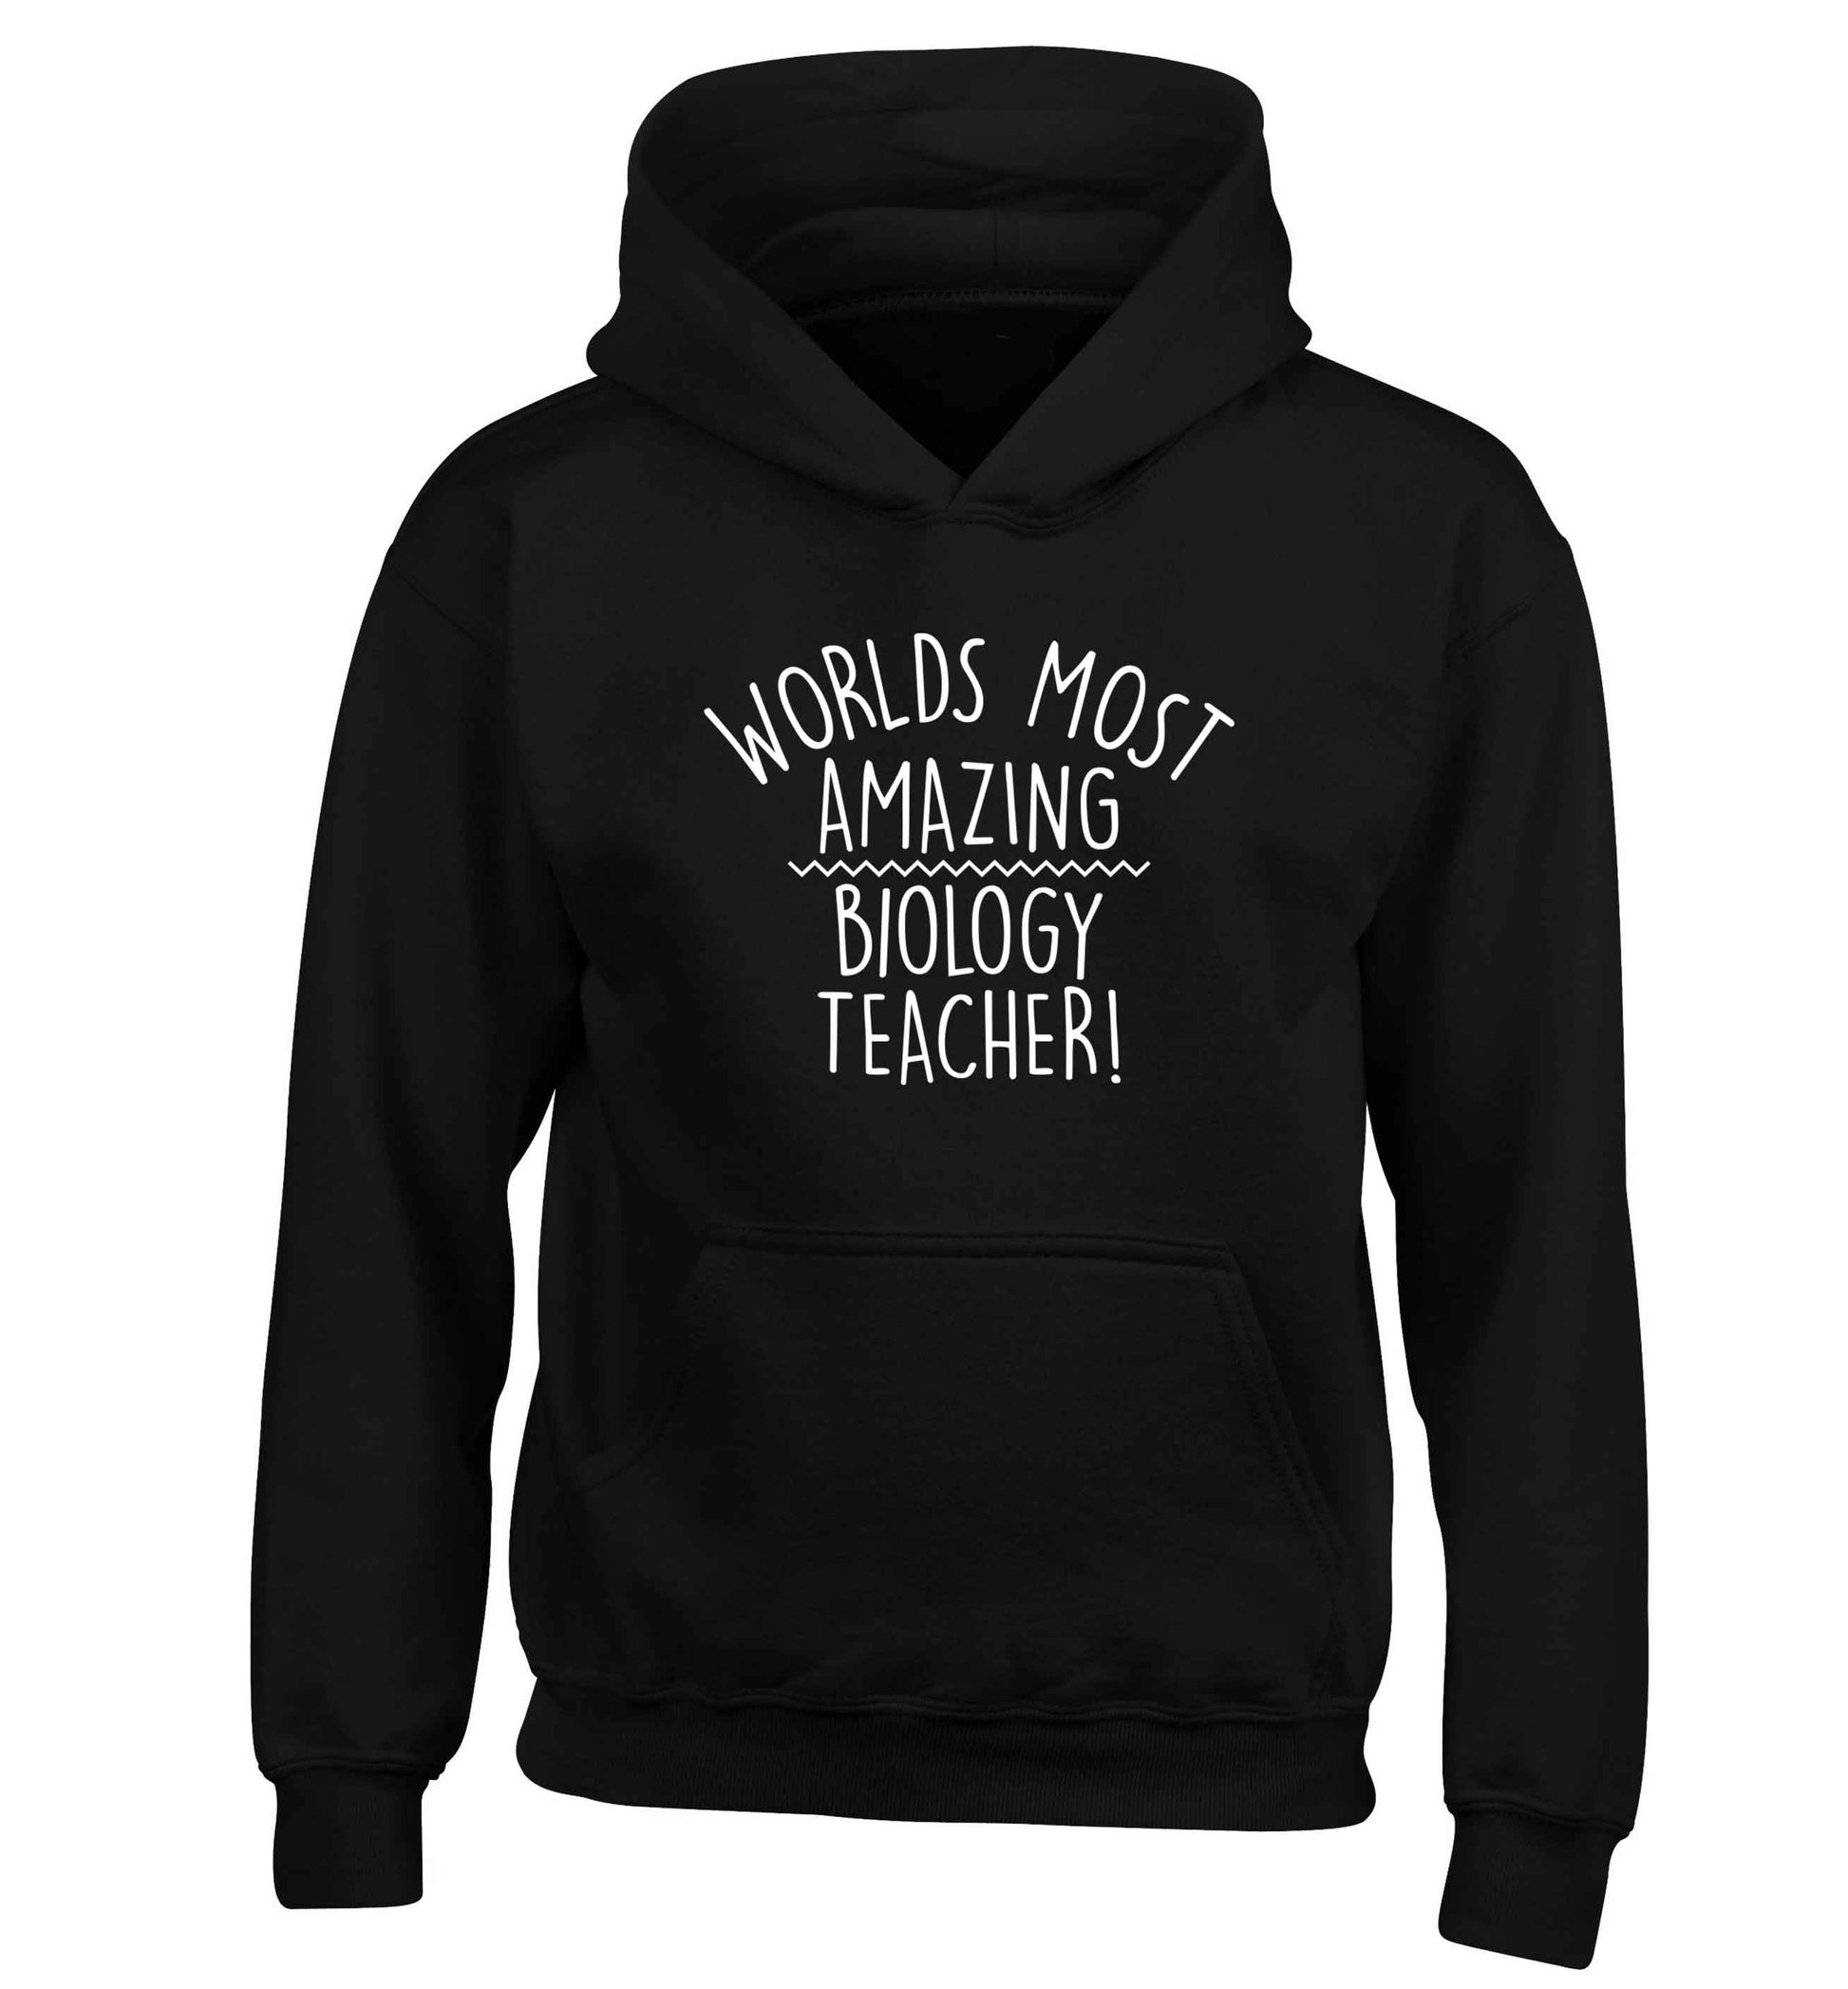 Worlds most amazing biology teacher children's black hoodie 12-13 Years